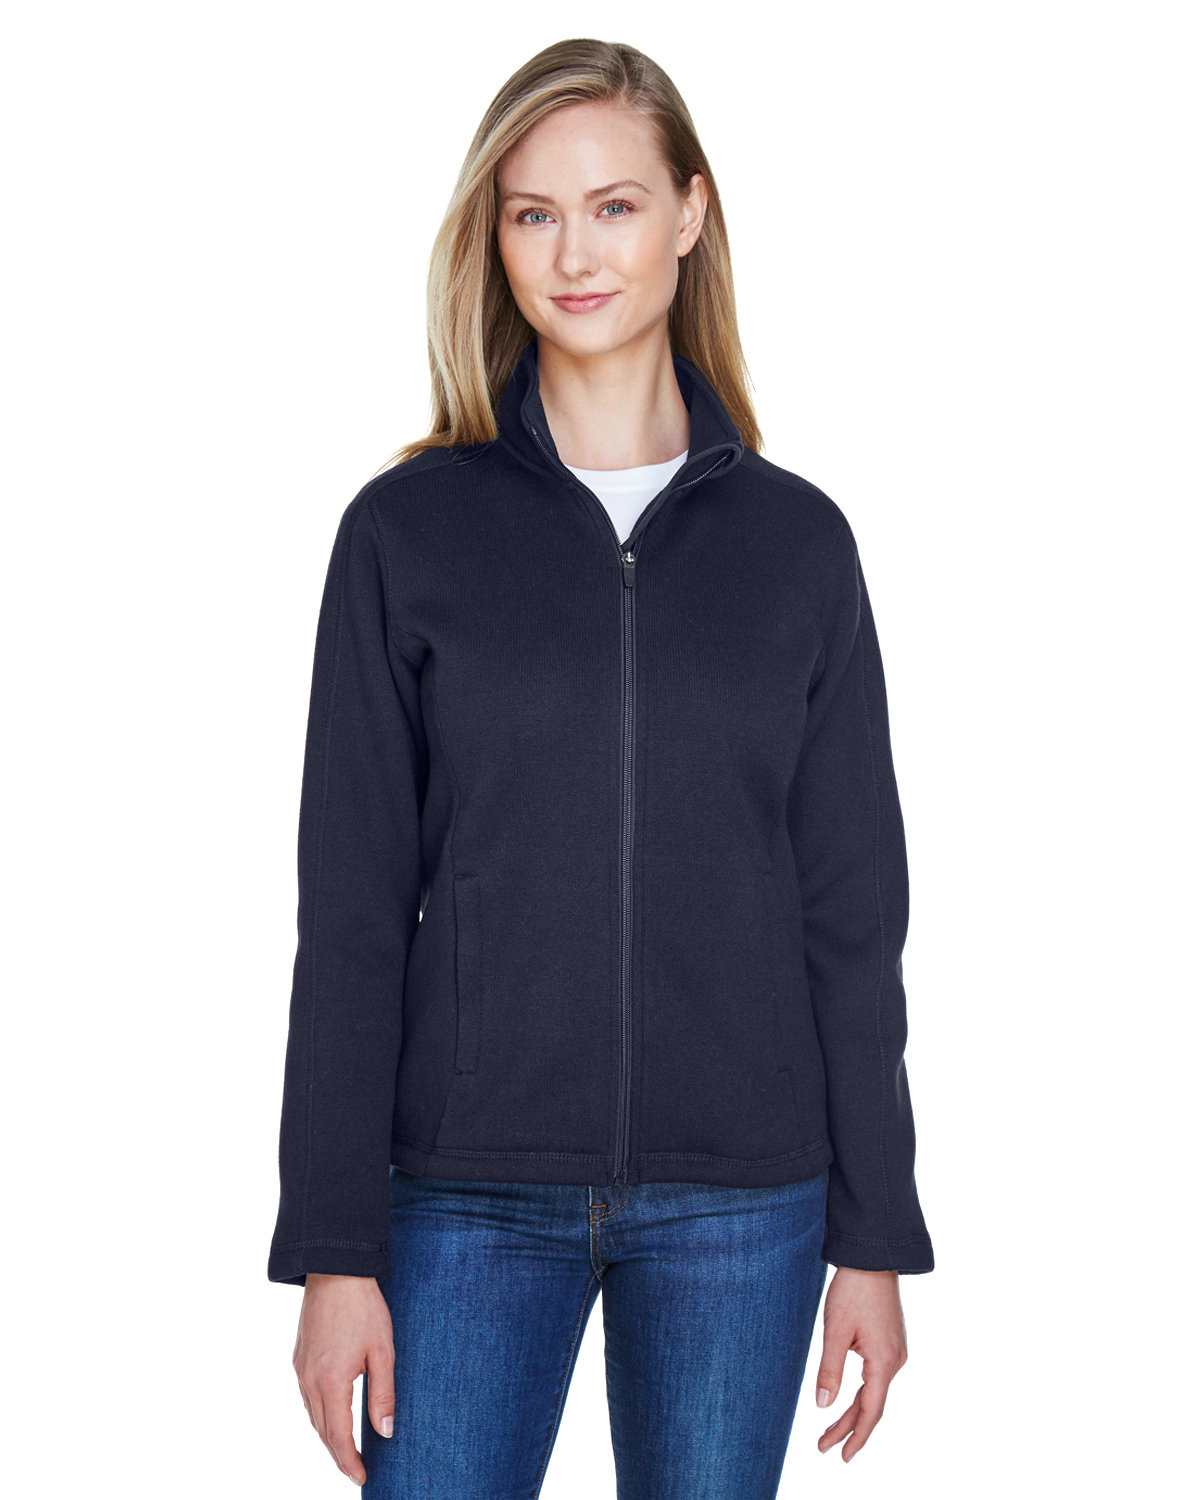 Devon & Jones Ladies' Bristol Full-Zip Sweater Fleece Jacket navy 